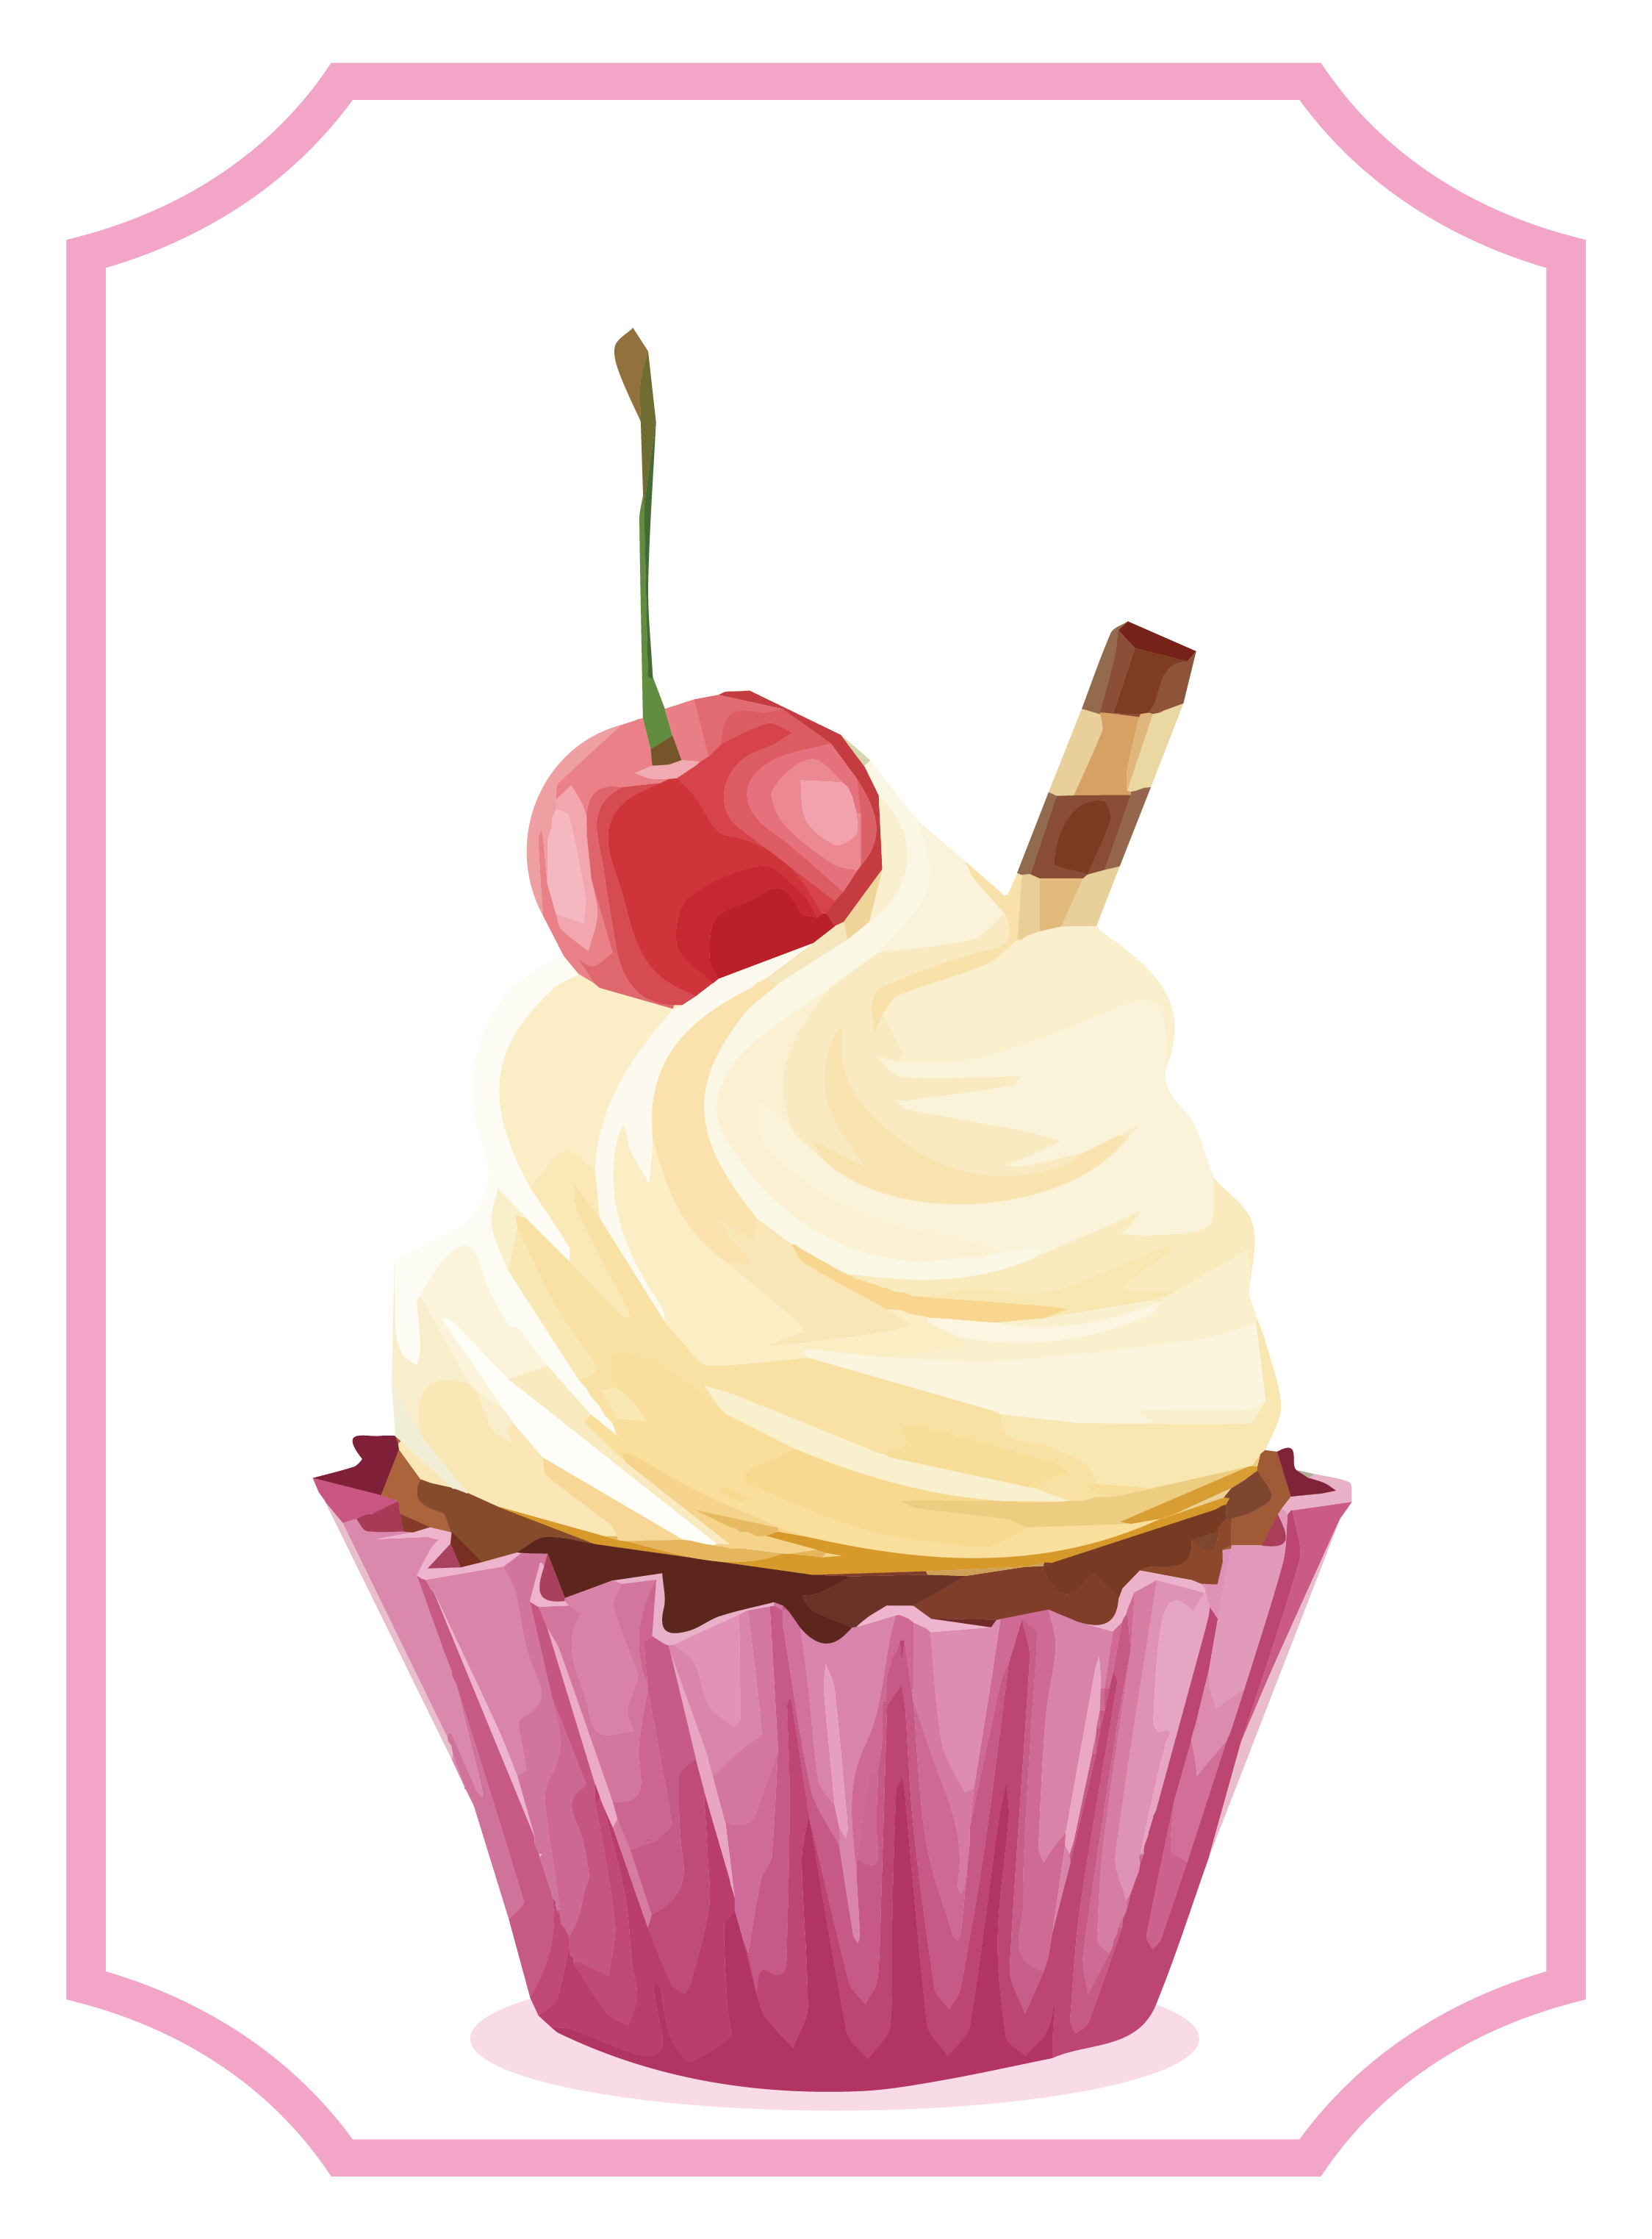 Cupcake Tart Cherry Cake Whipped Cream Cherry Pie - Tart (2248x3046)